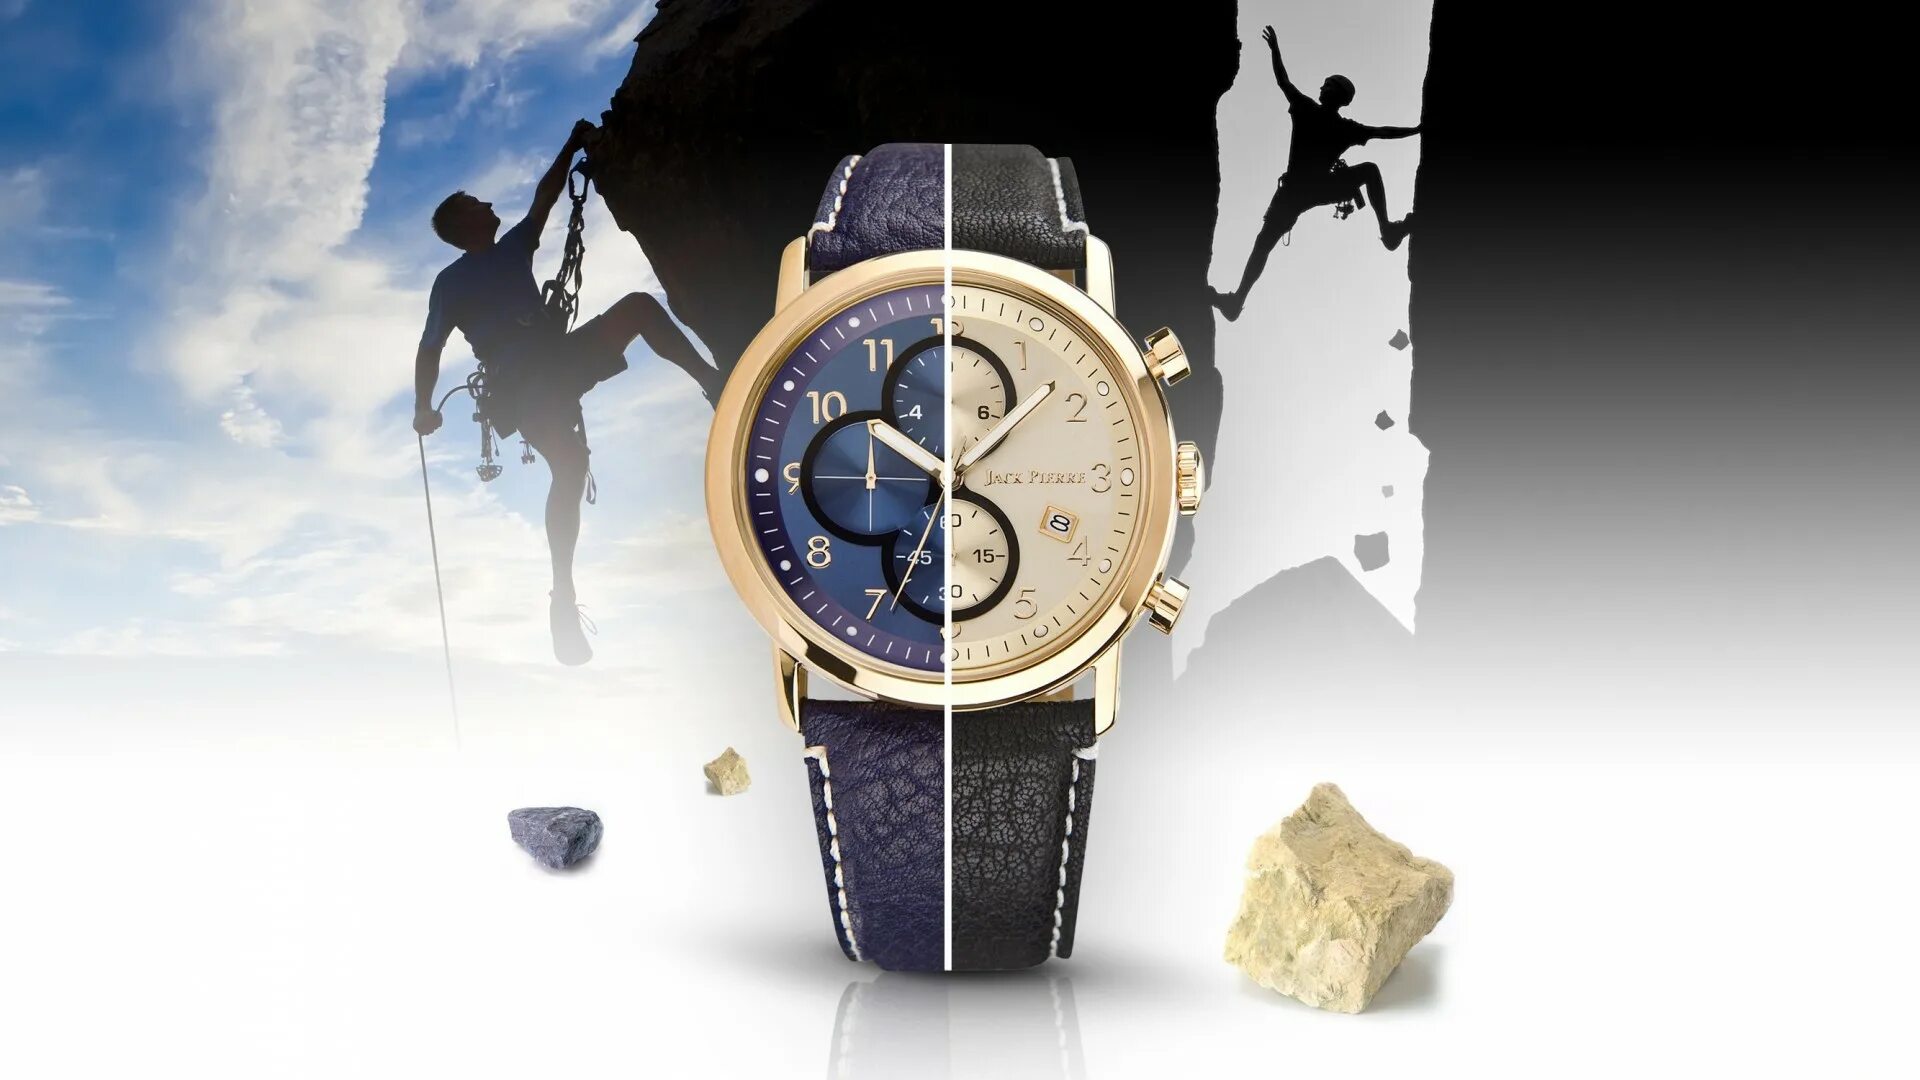 Реклама сайта часов. Стильные наручные часы. Стильные мужские часы. Реклама часов. Крутые мужские часы.